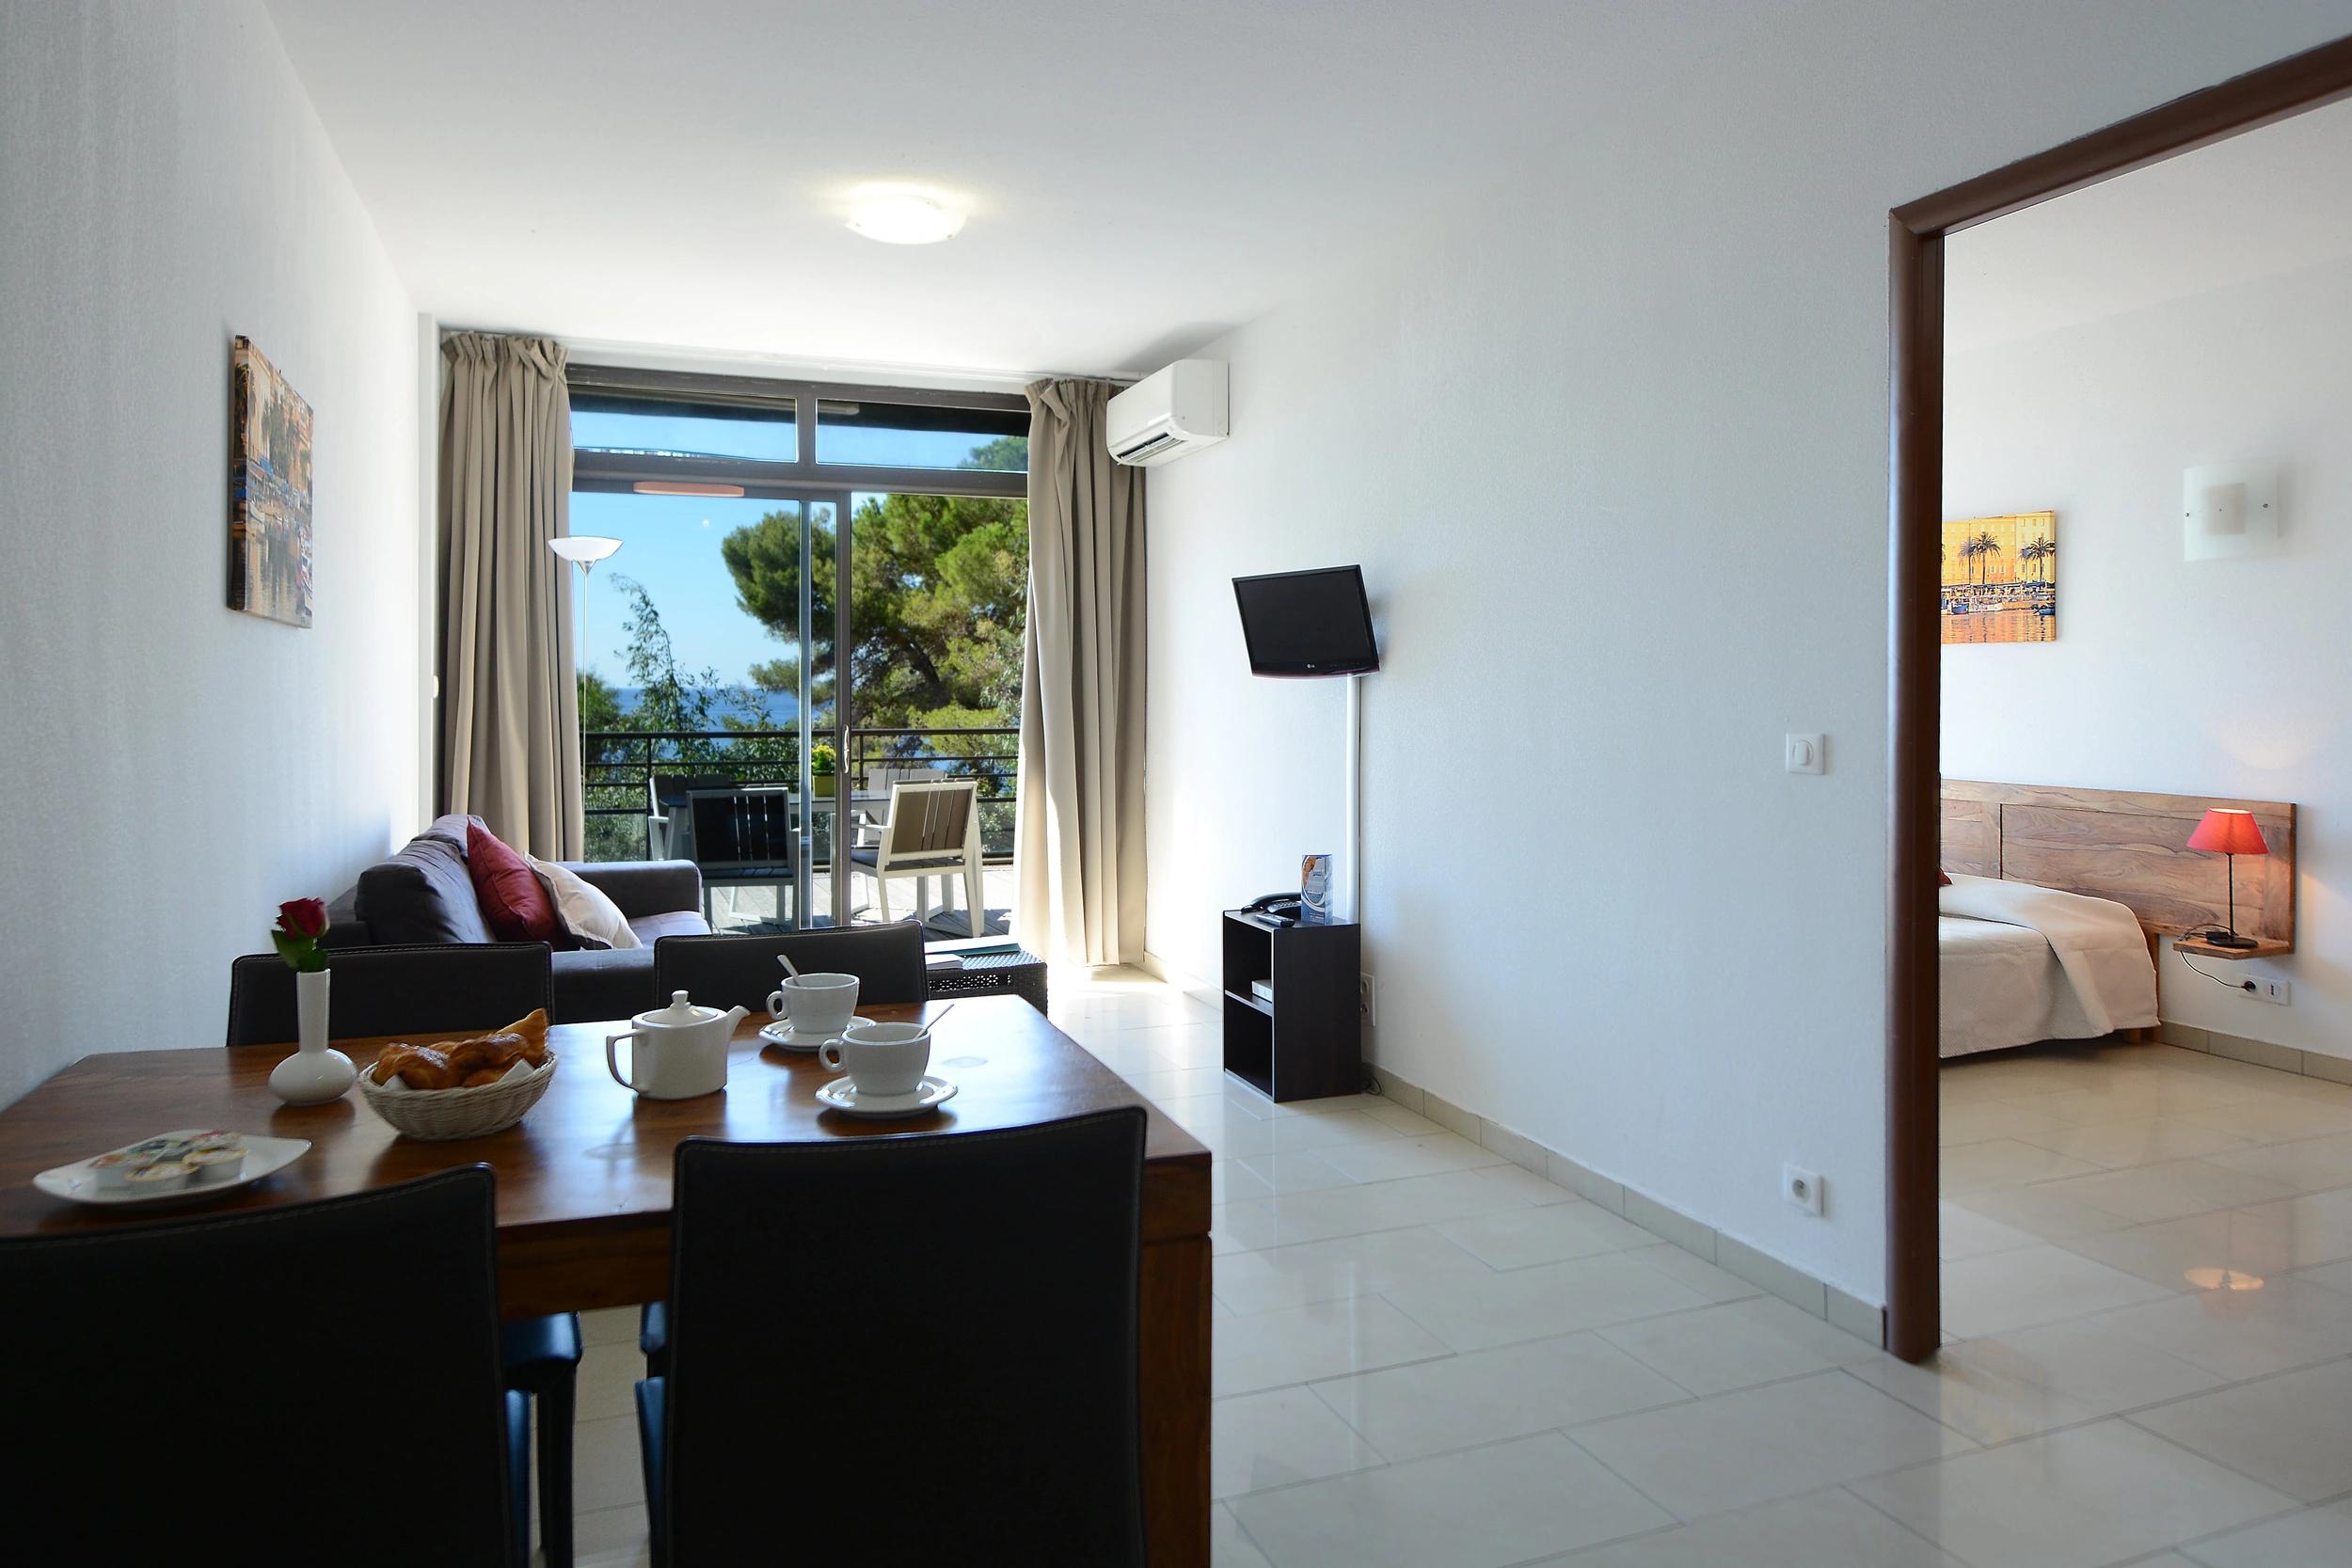 Appartement de vacances spacieux à louer dans notre résidence à Ajaccio